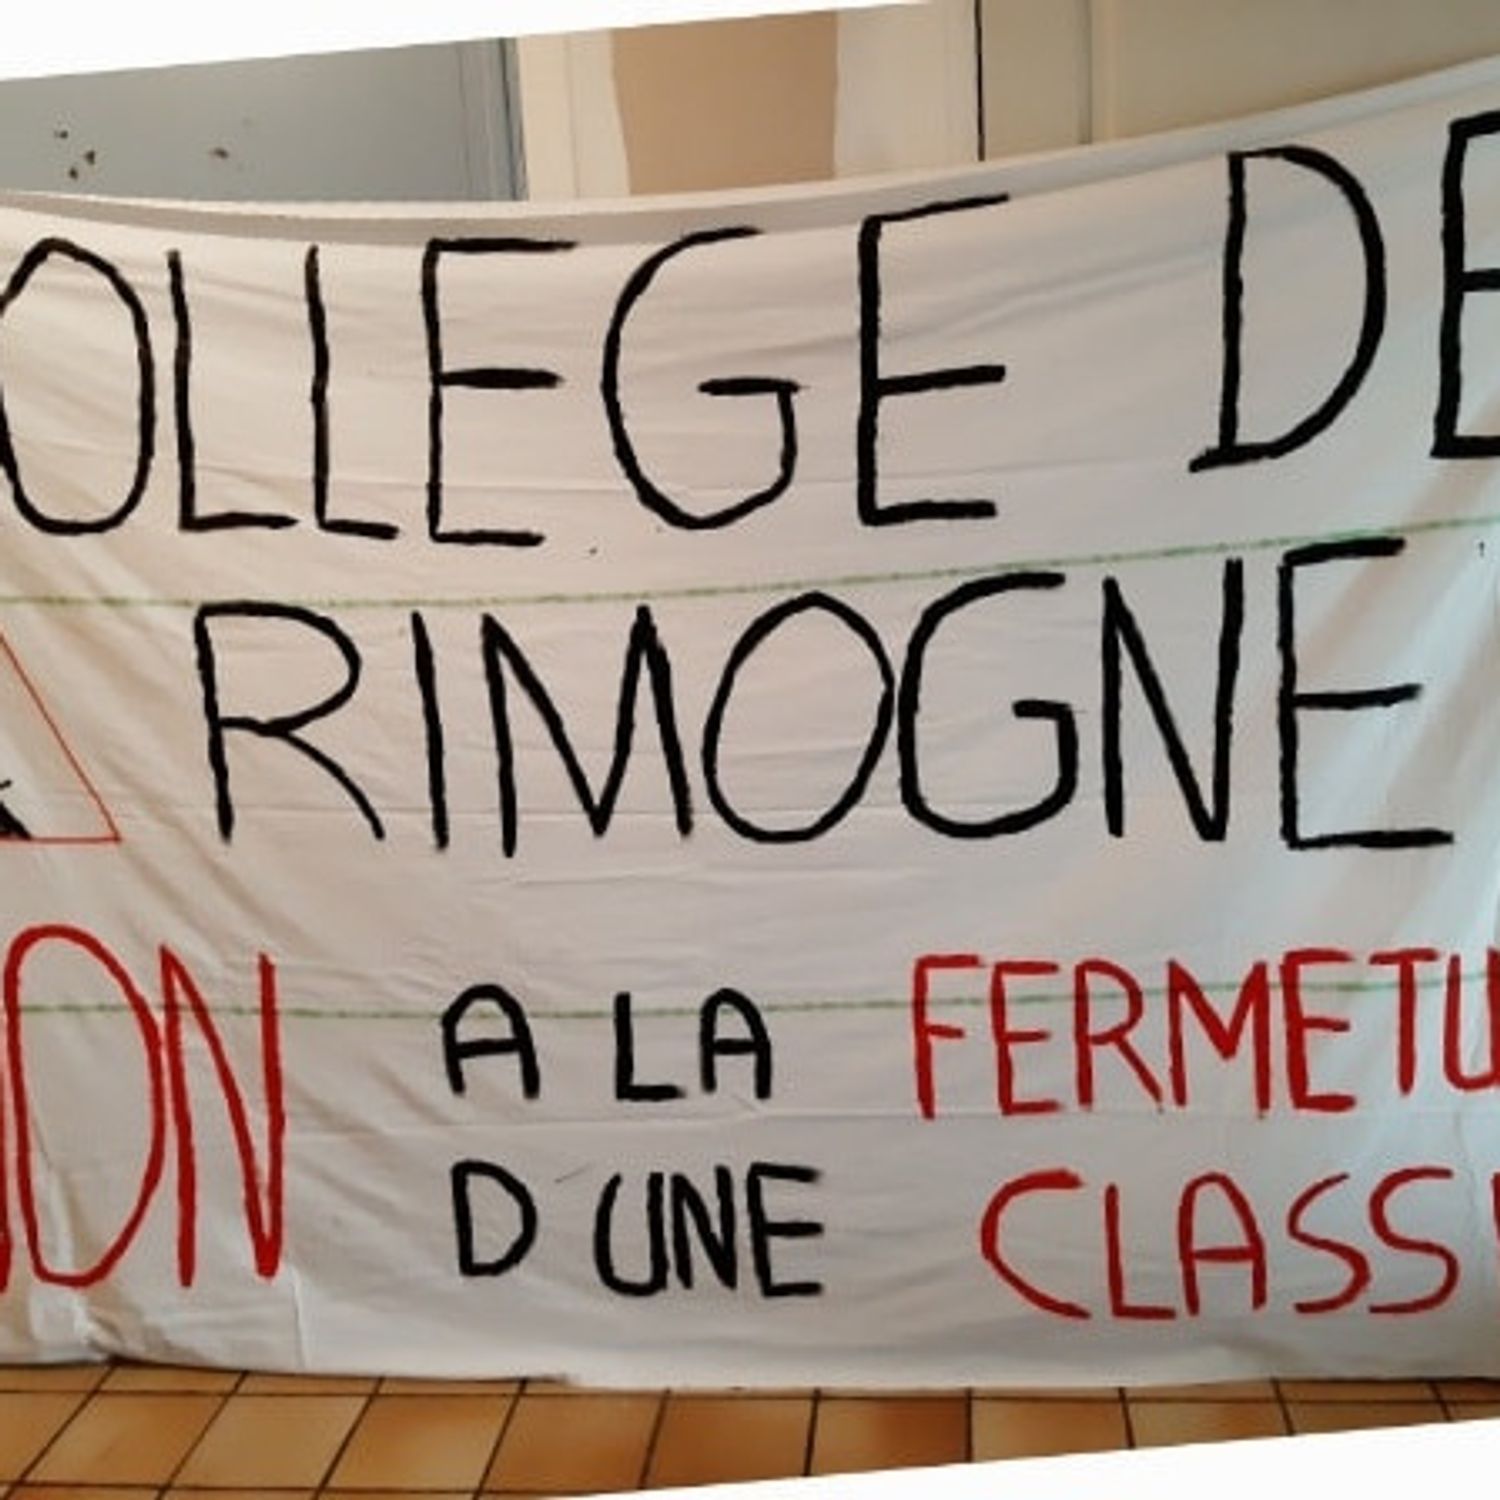 Mobilisation contre la fermeture d'une classe au collège de Rimogne